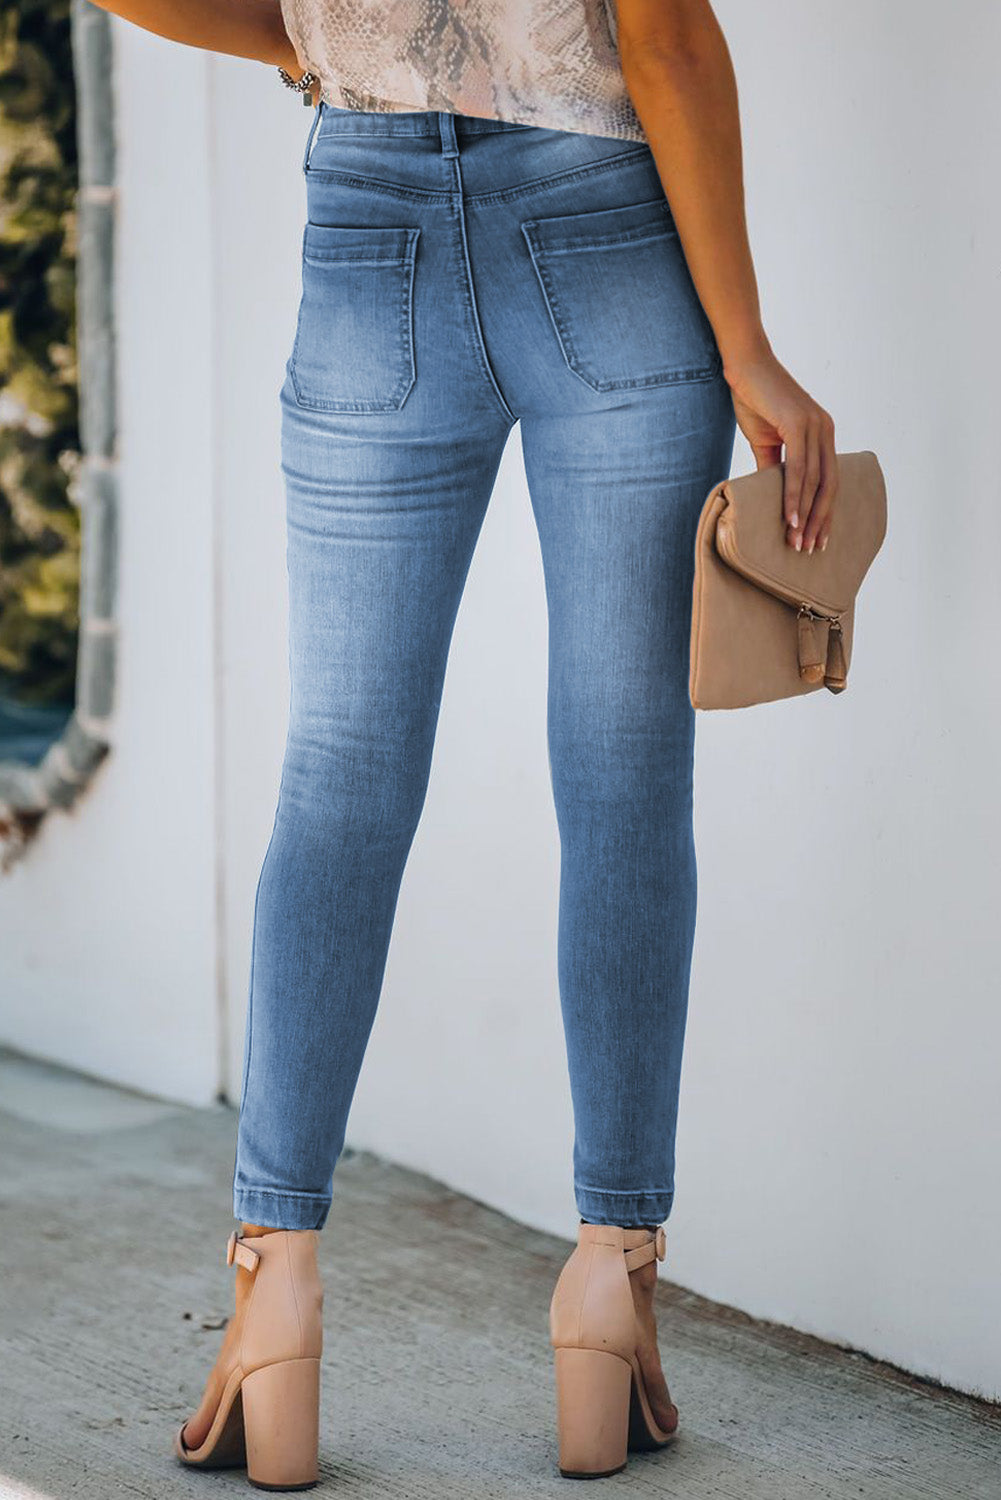 Dunkelblaue Skinny-Jeans mit Knopfleiste und Taschen